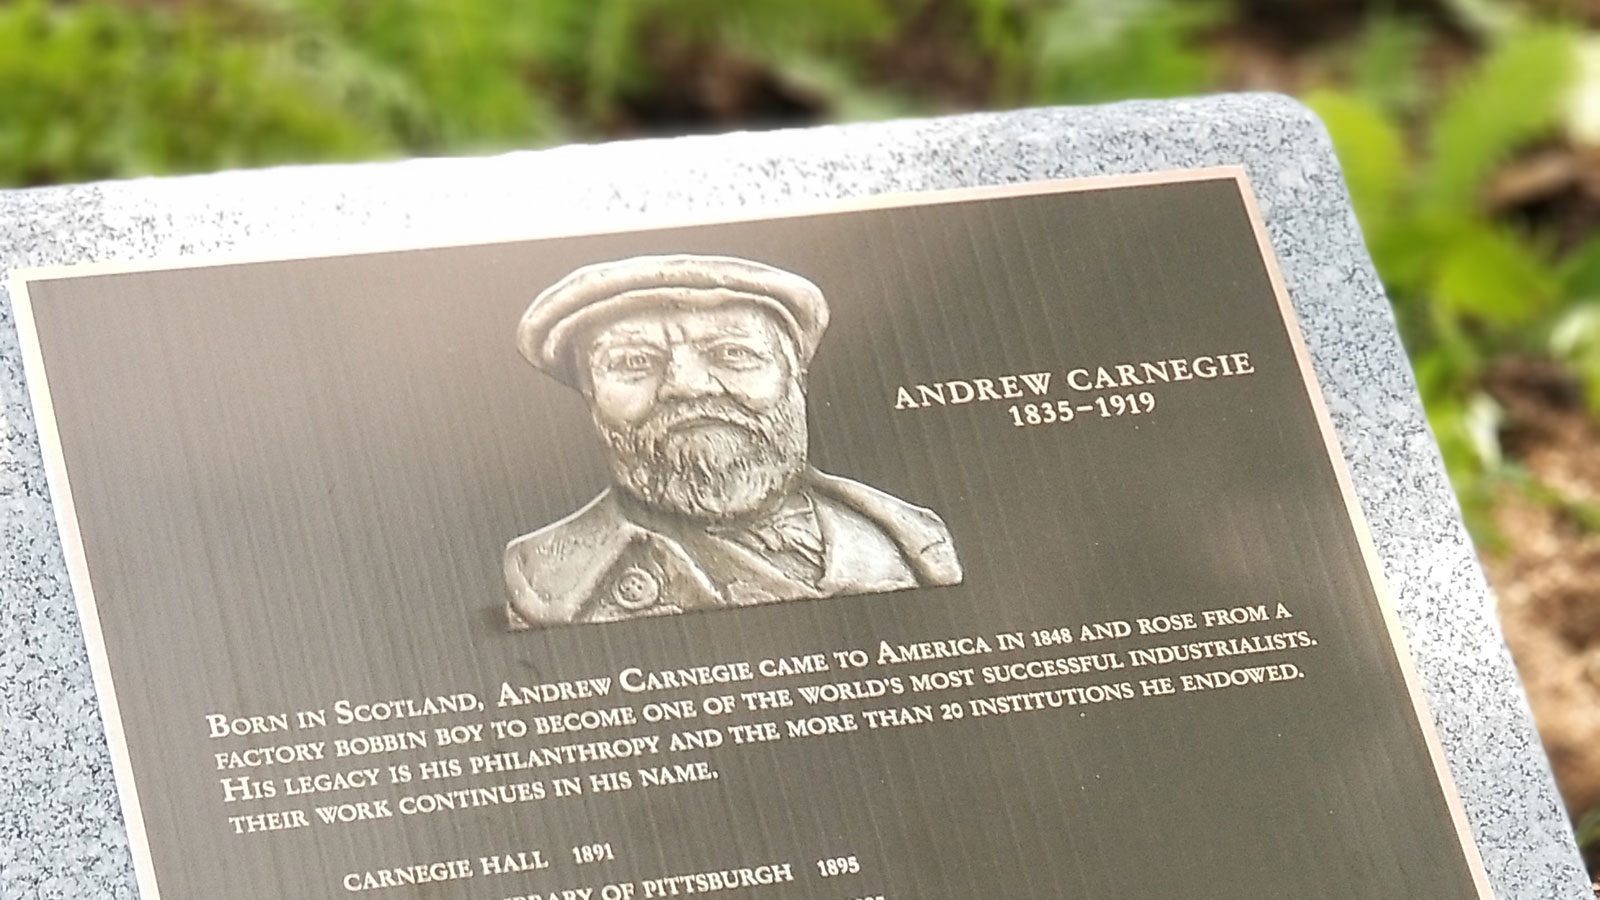 Andrew Carnegie: "Vua thép" giàu lòng bác ái, lúc hấp hối giận chính mình vì vẫn còn giàu